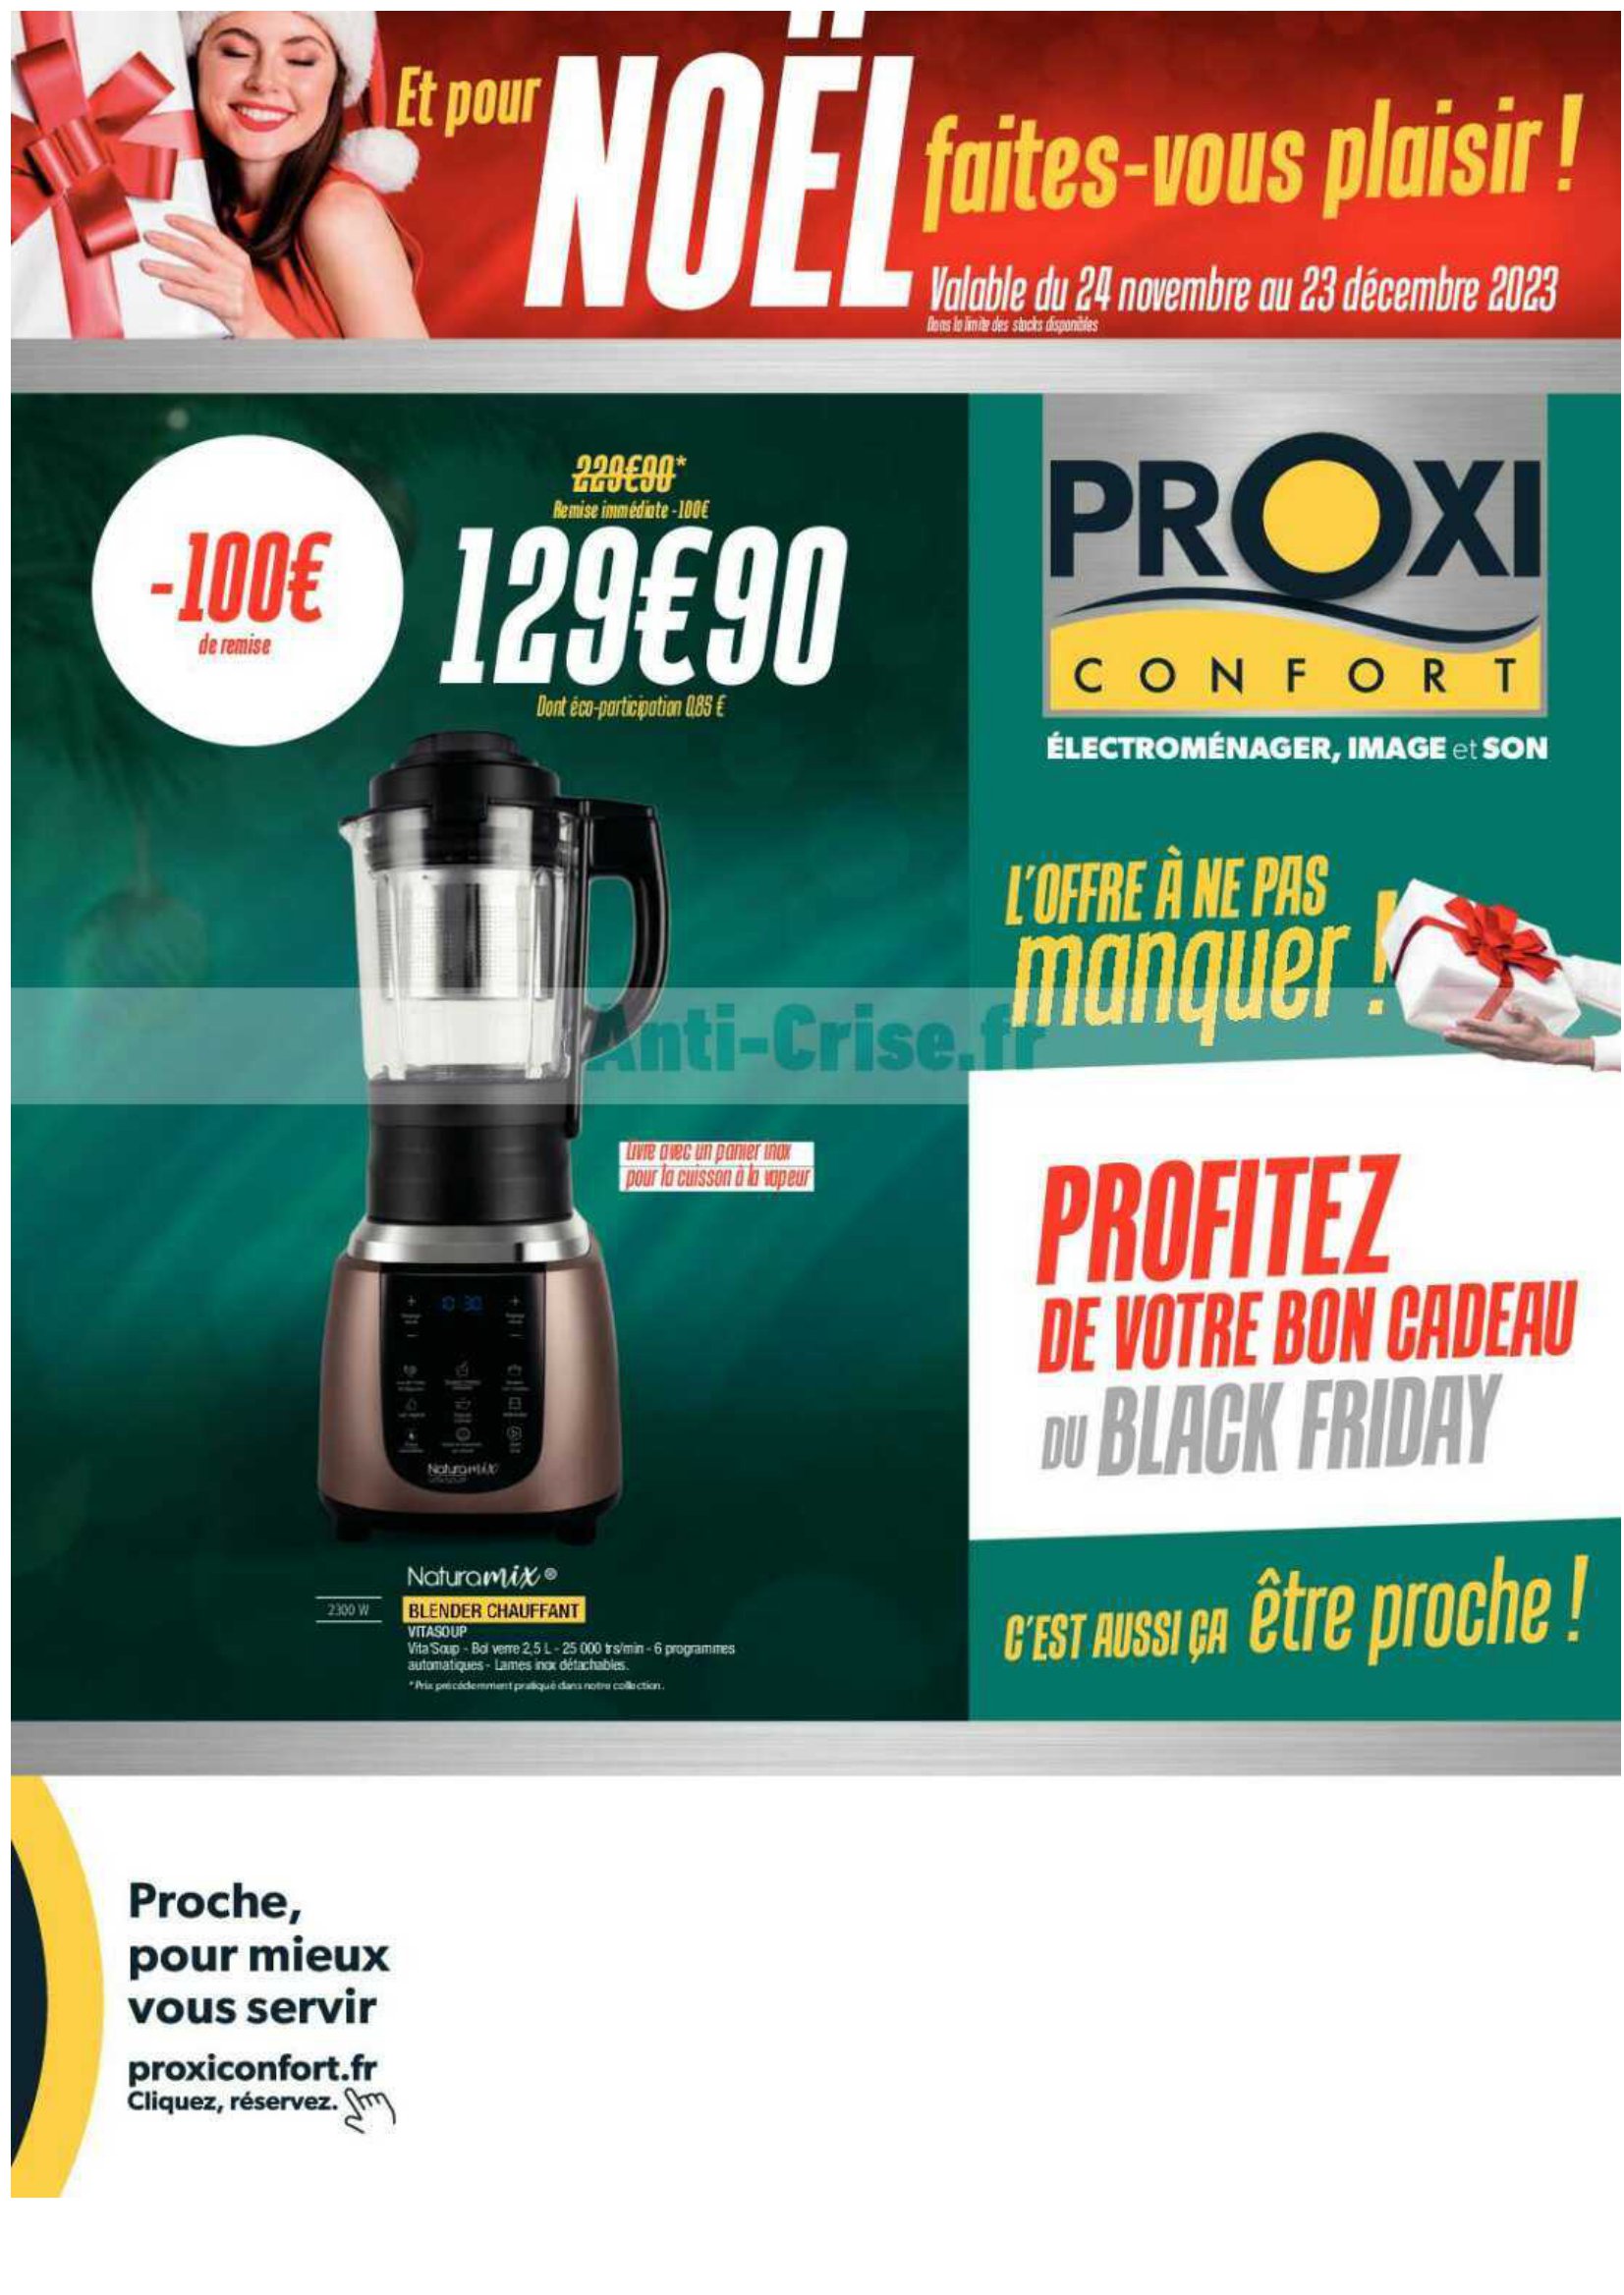 Catalogue Proxi Confort Noël 2023 1 – proxi confort bf noel 1